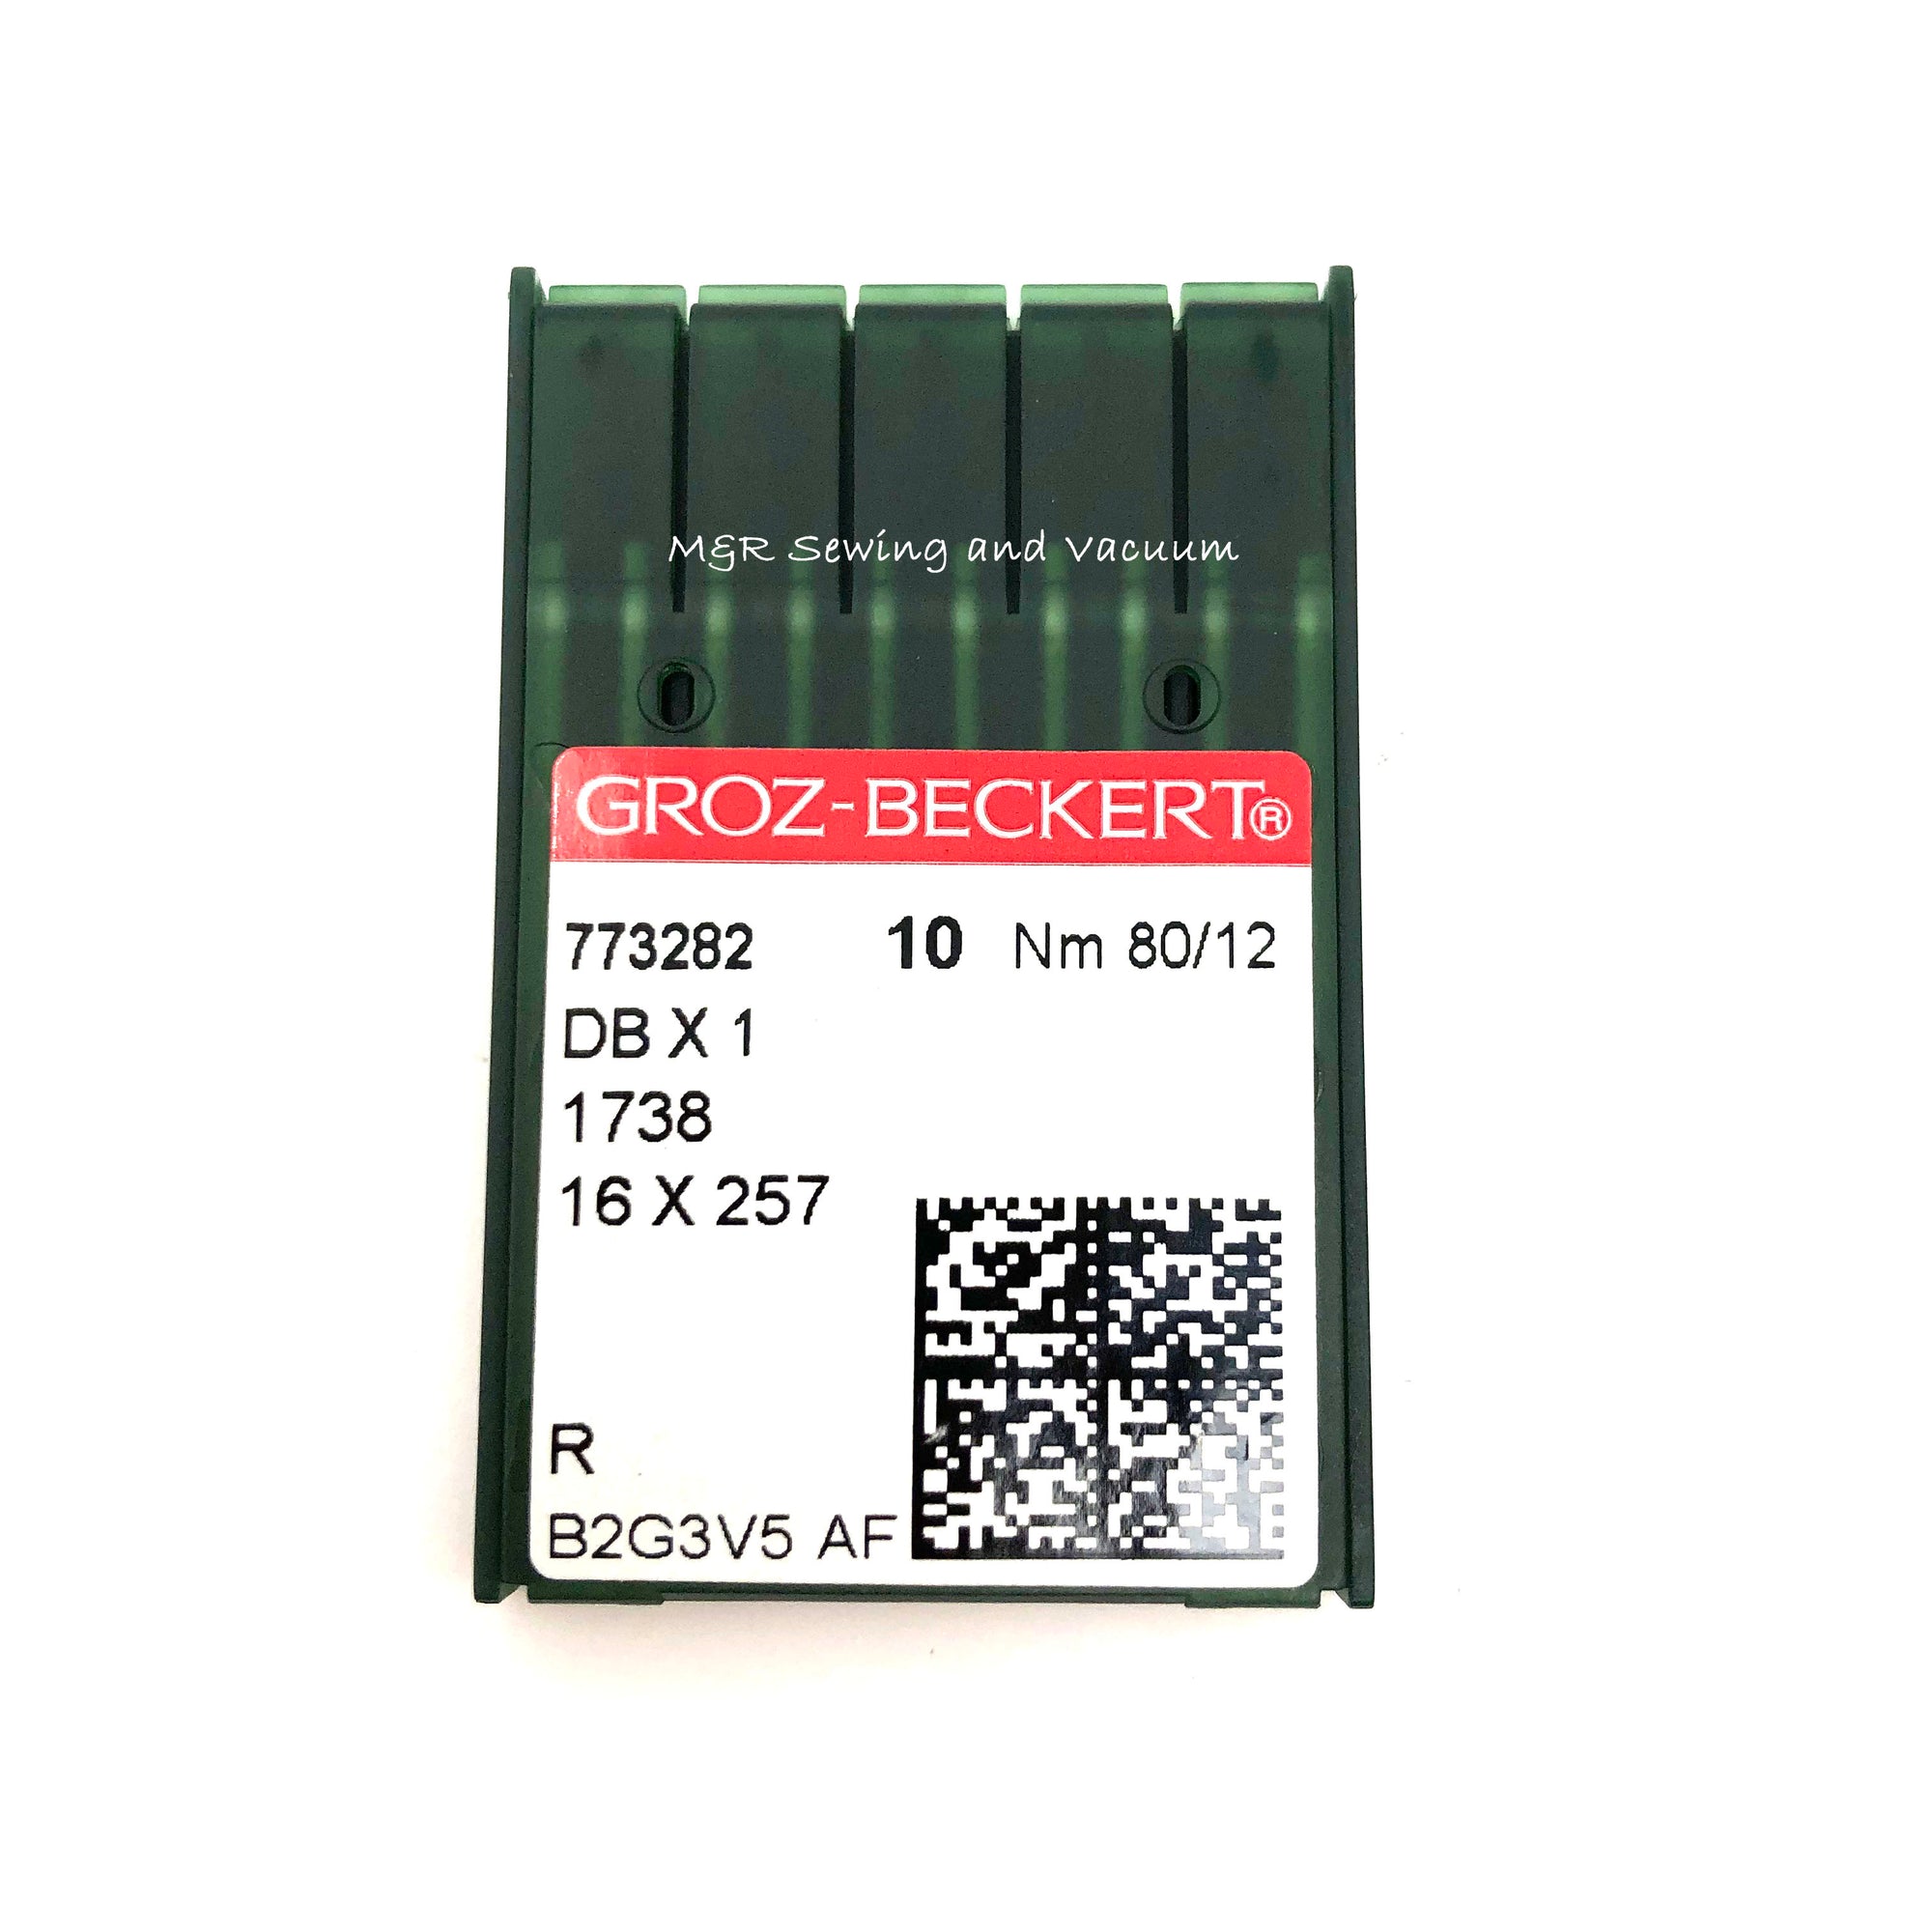 Groz-Beckert DBx1 Industrial Needles - 80/12